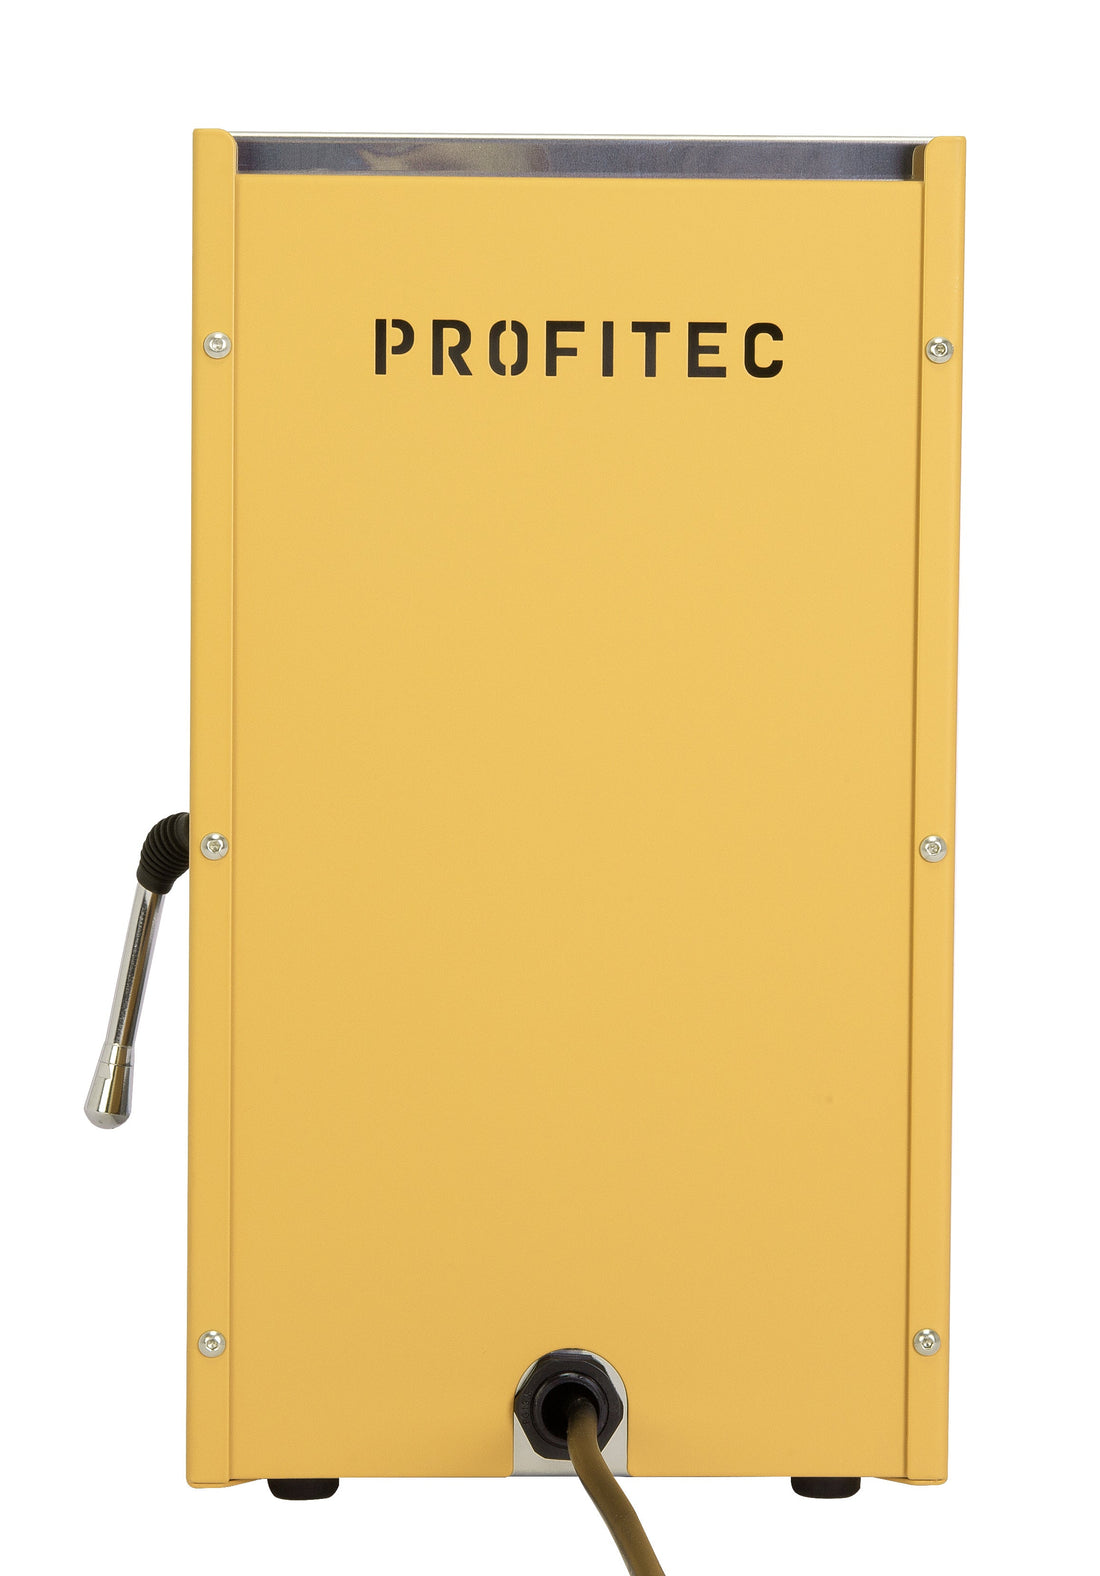 Profitec GO Espresso Machine - Yellow with Walnut